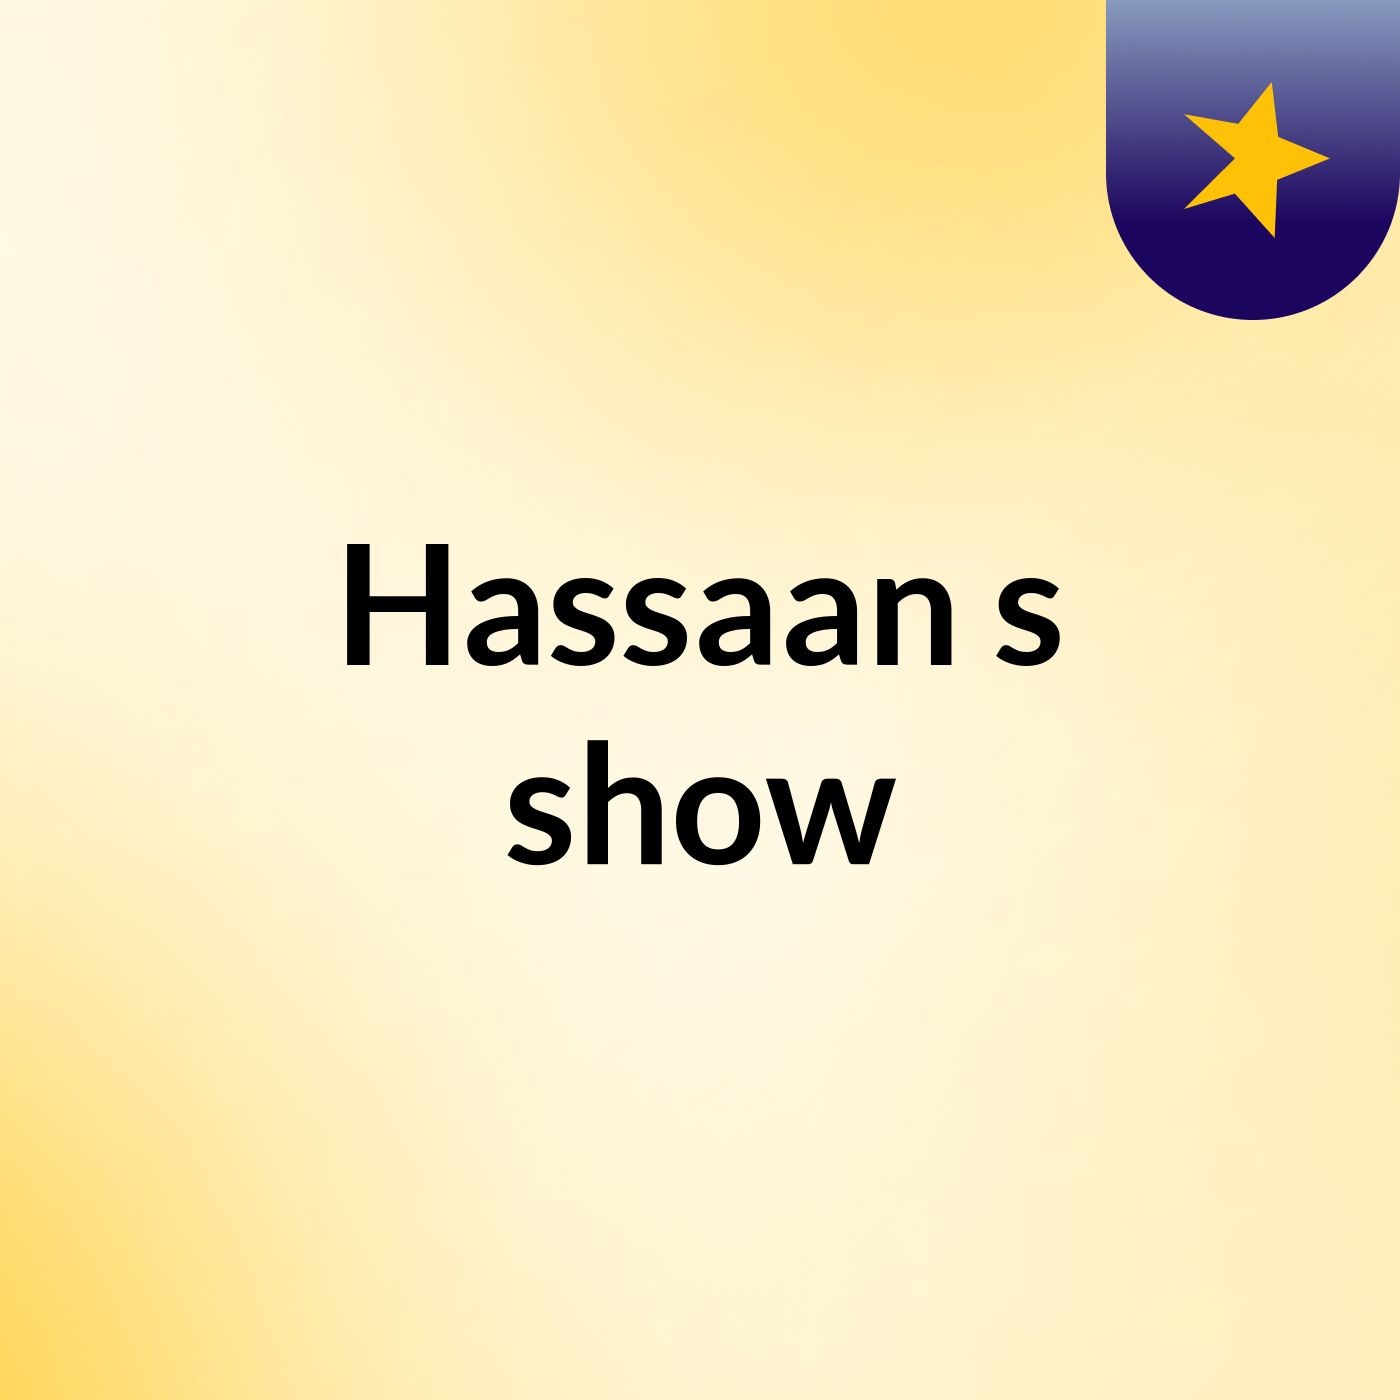 Hassaan's show